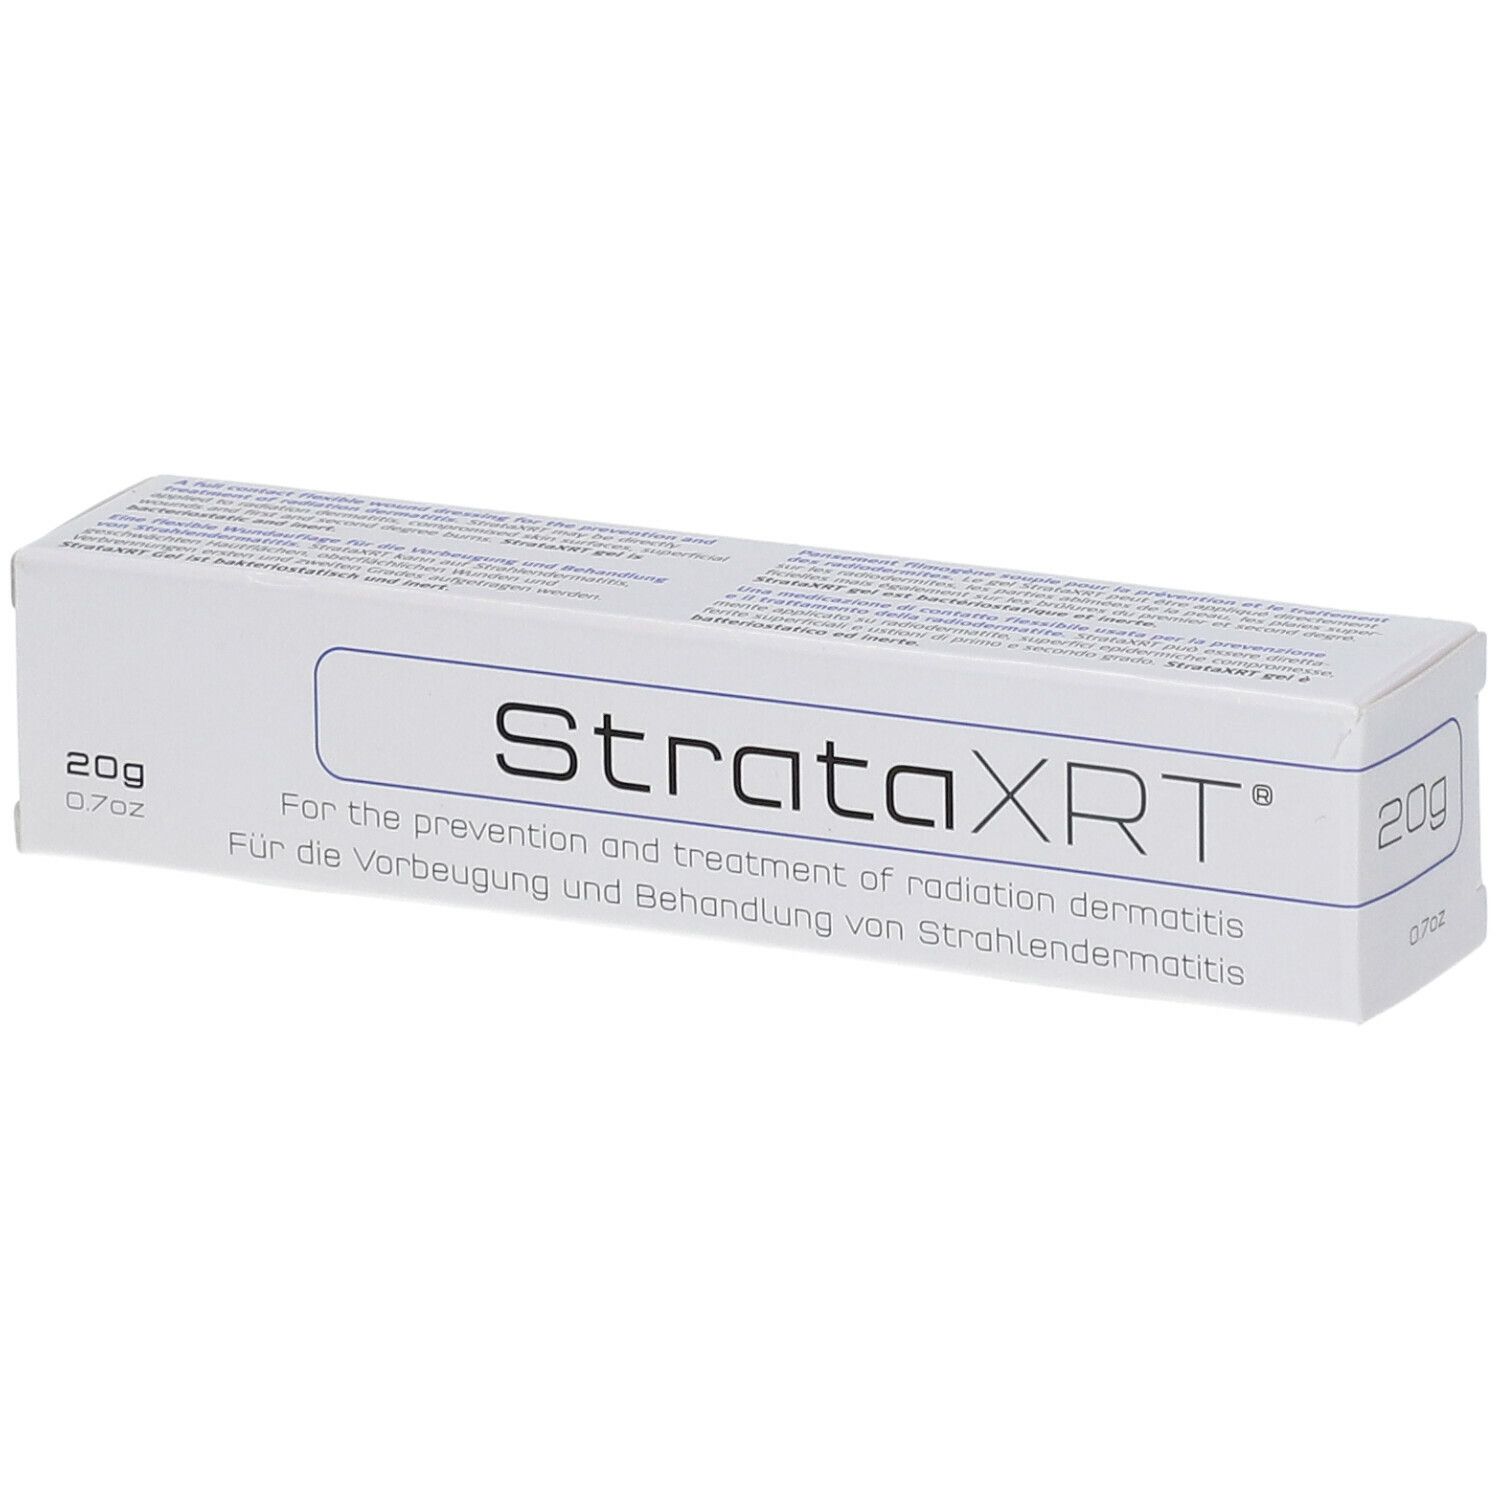 StrataXRT®